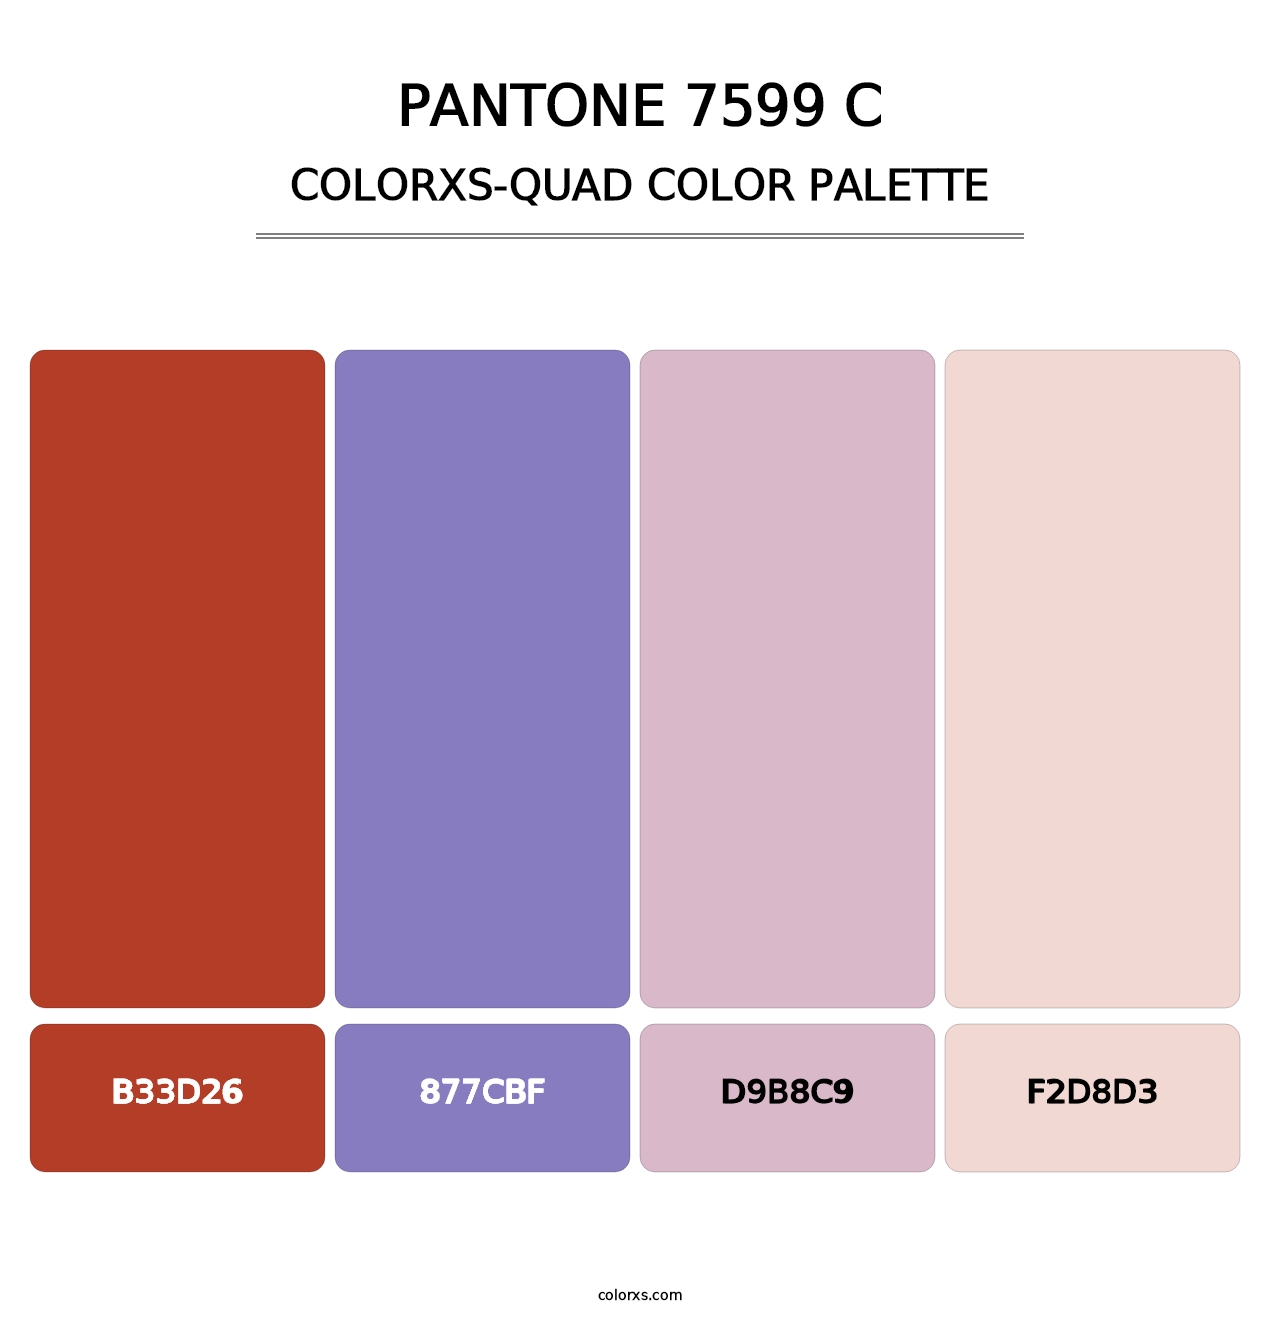 PANTONE 7599 C - Colorxs Quad Palette